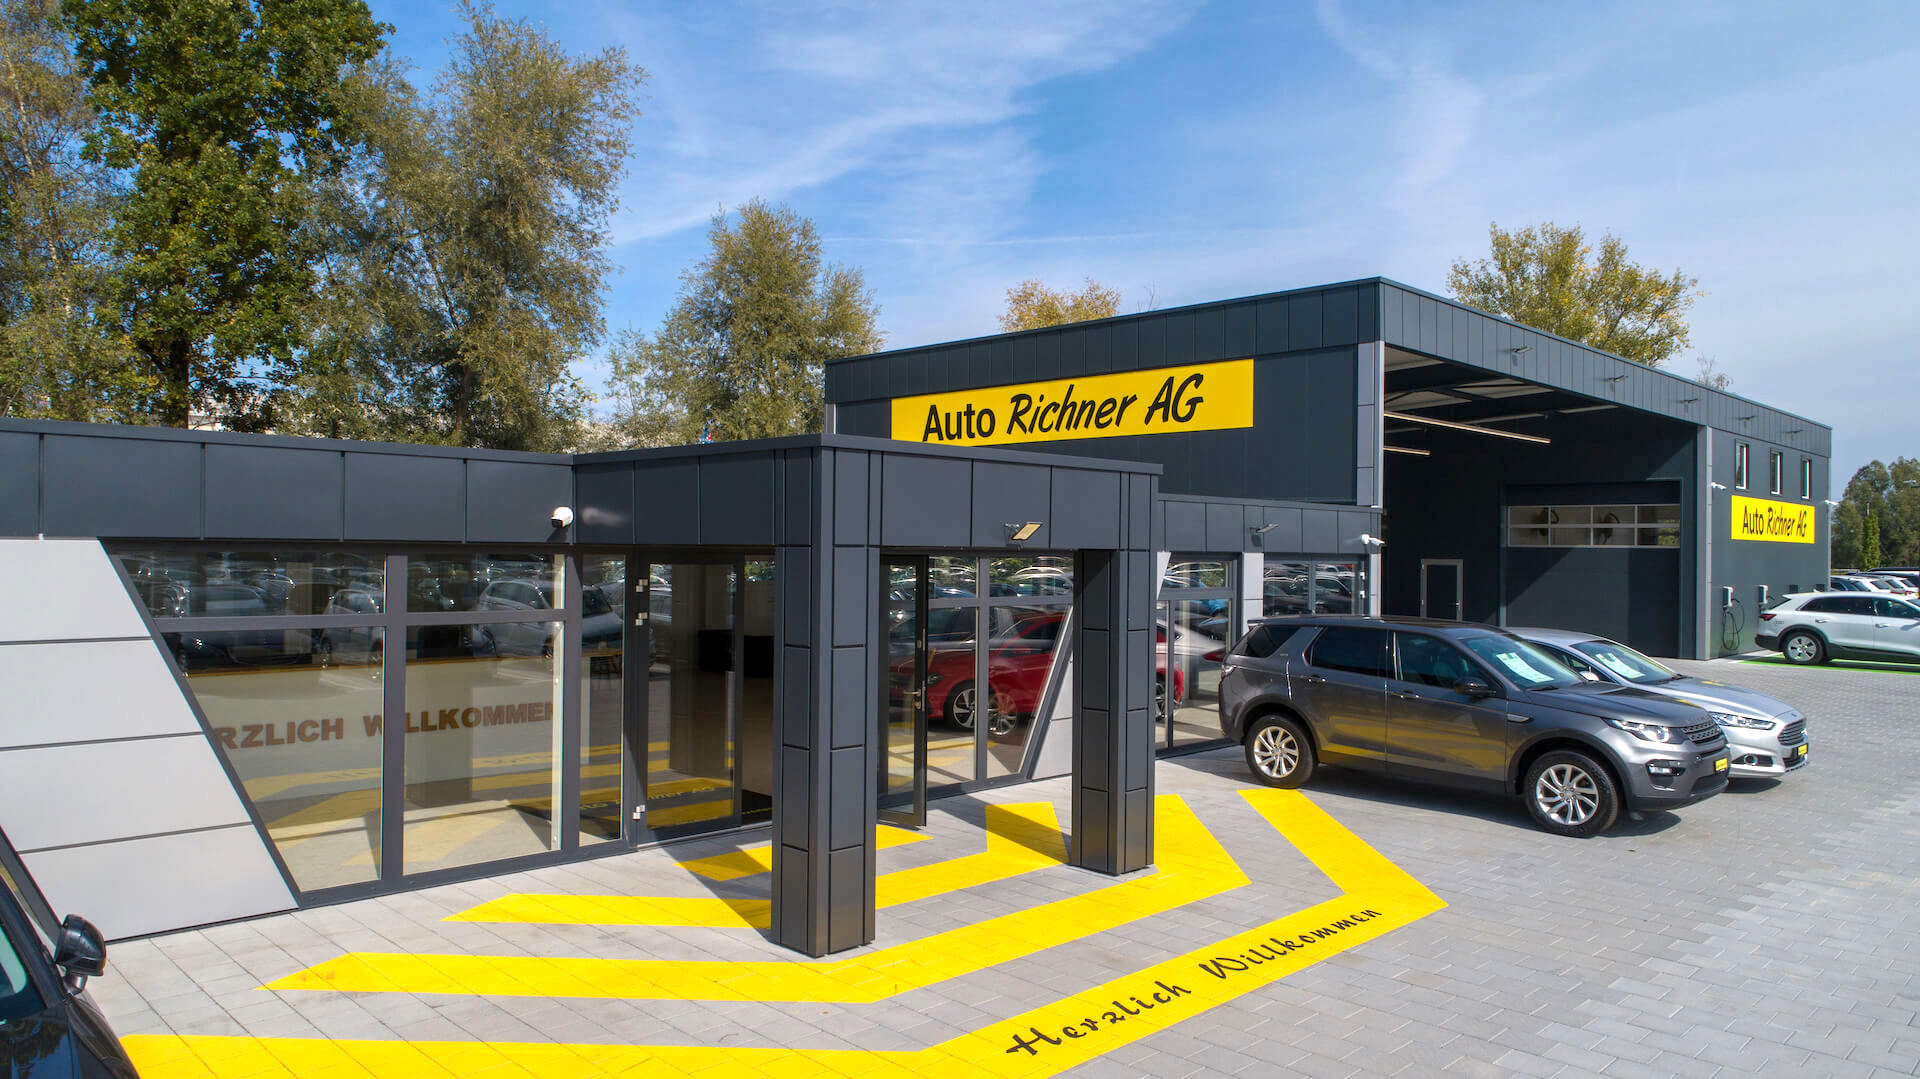 Home - Auto Richner AG - Verkaufsfiliale in Arbon & Aadorf | Carrosserie & Werkstatt in Steinach 15